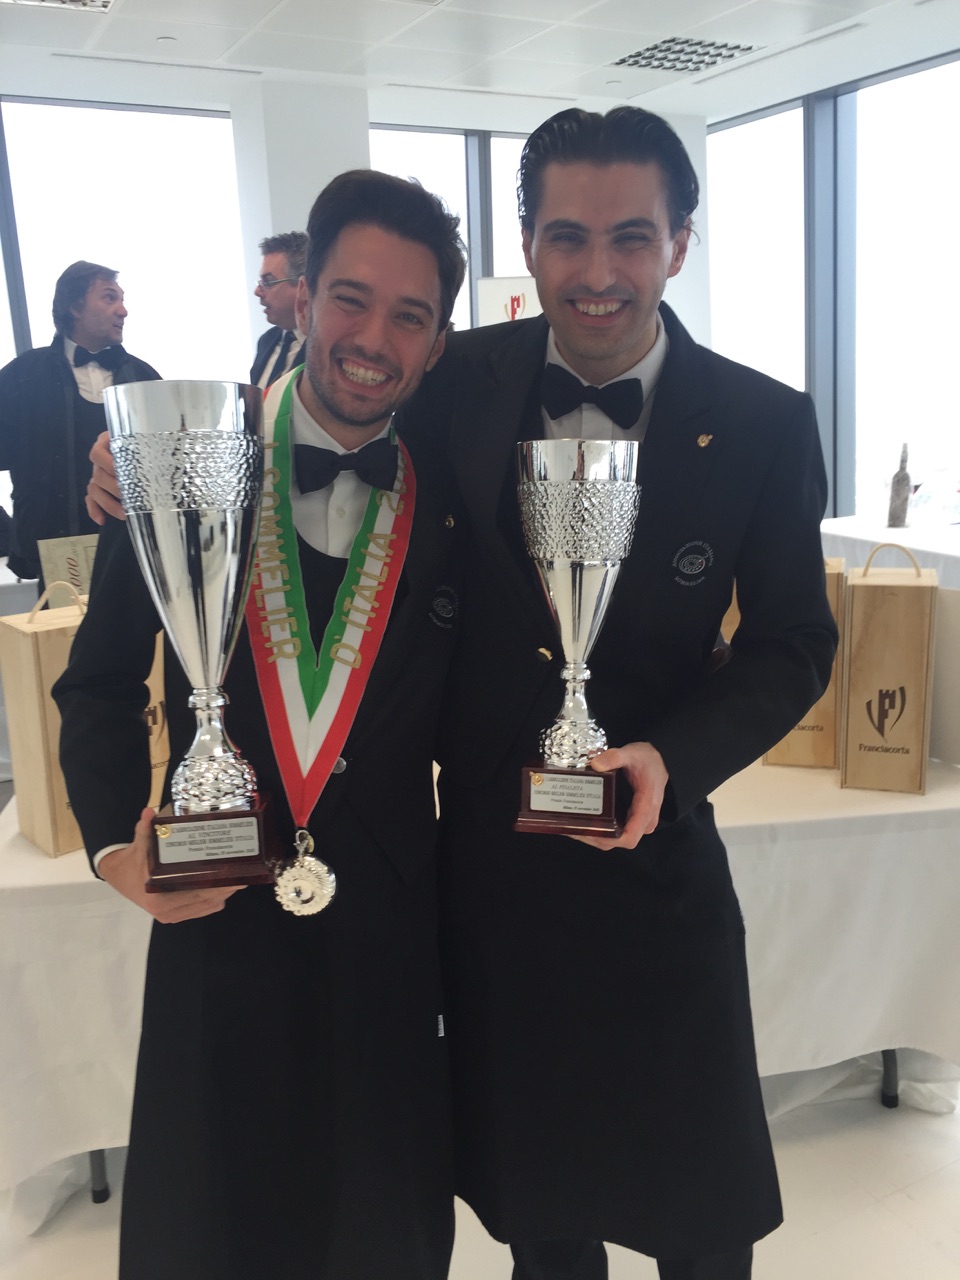 AIS Toscana ai vertici della sommellerie italiana - Andrea Galanti Miglior Sommelier d'Italia 2015 con il secondo classificato Massimo Tortora